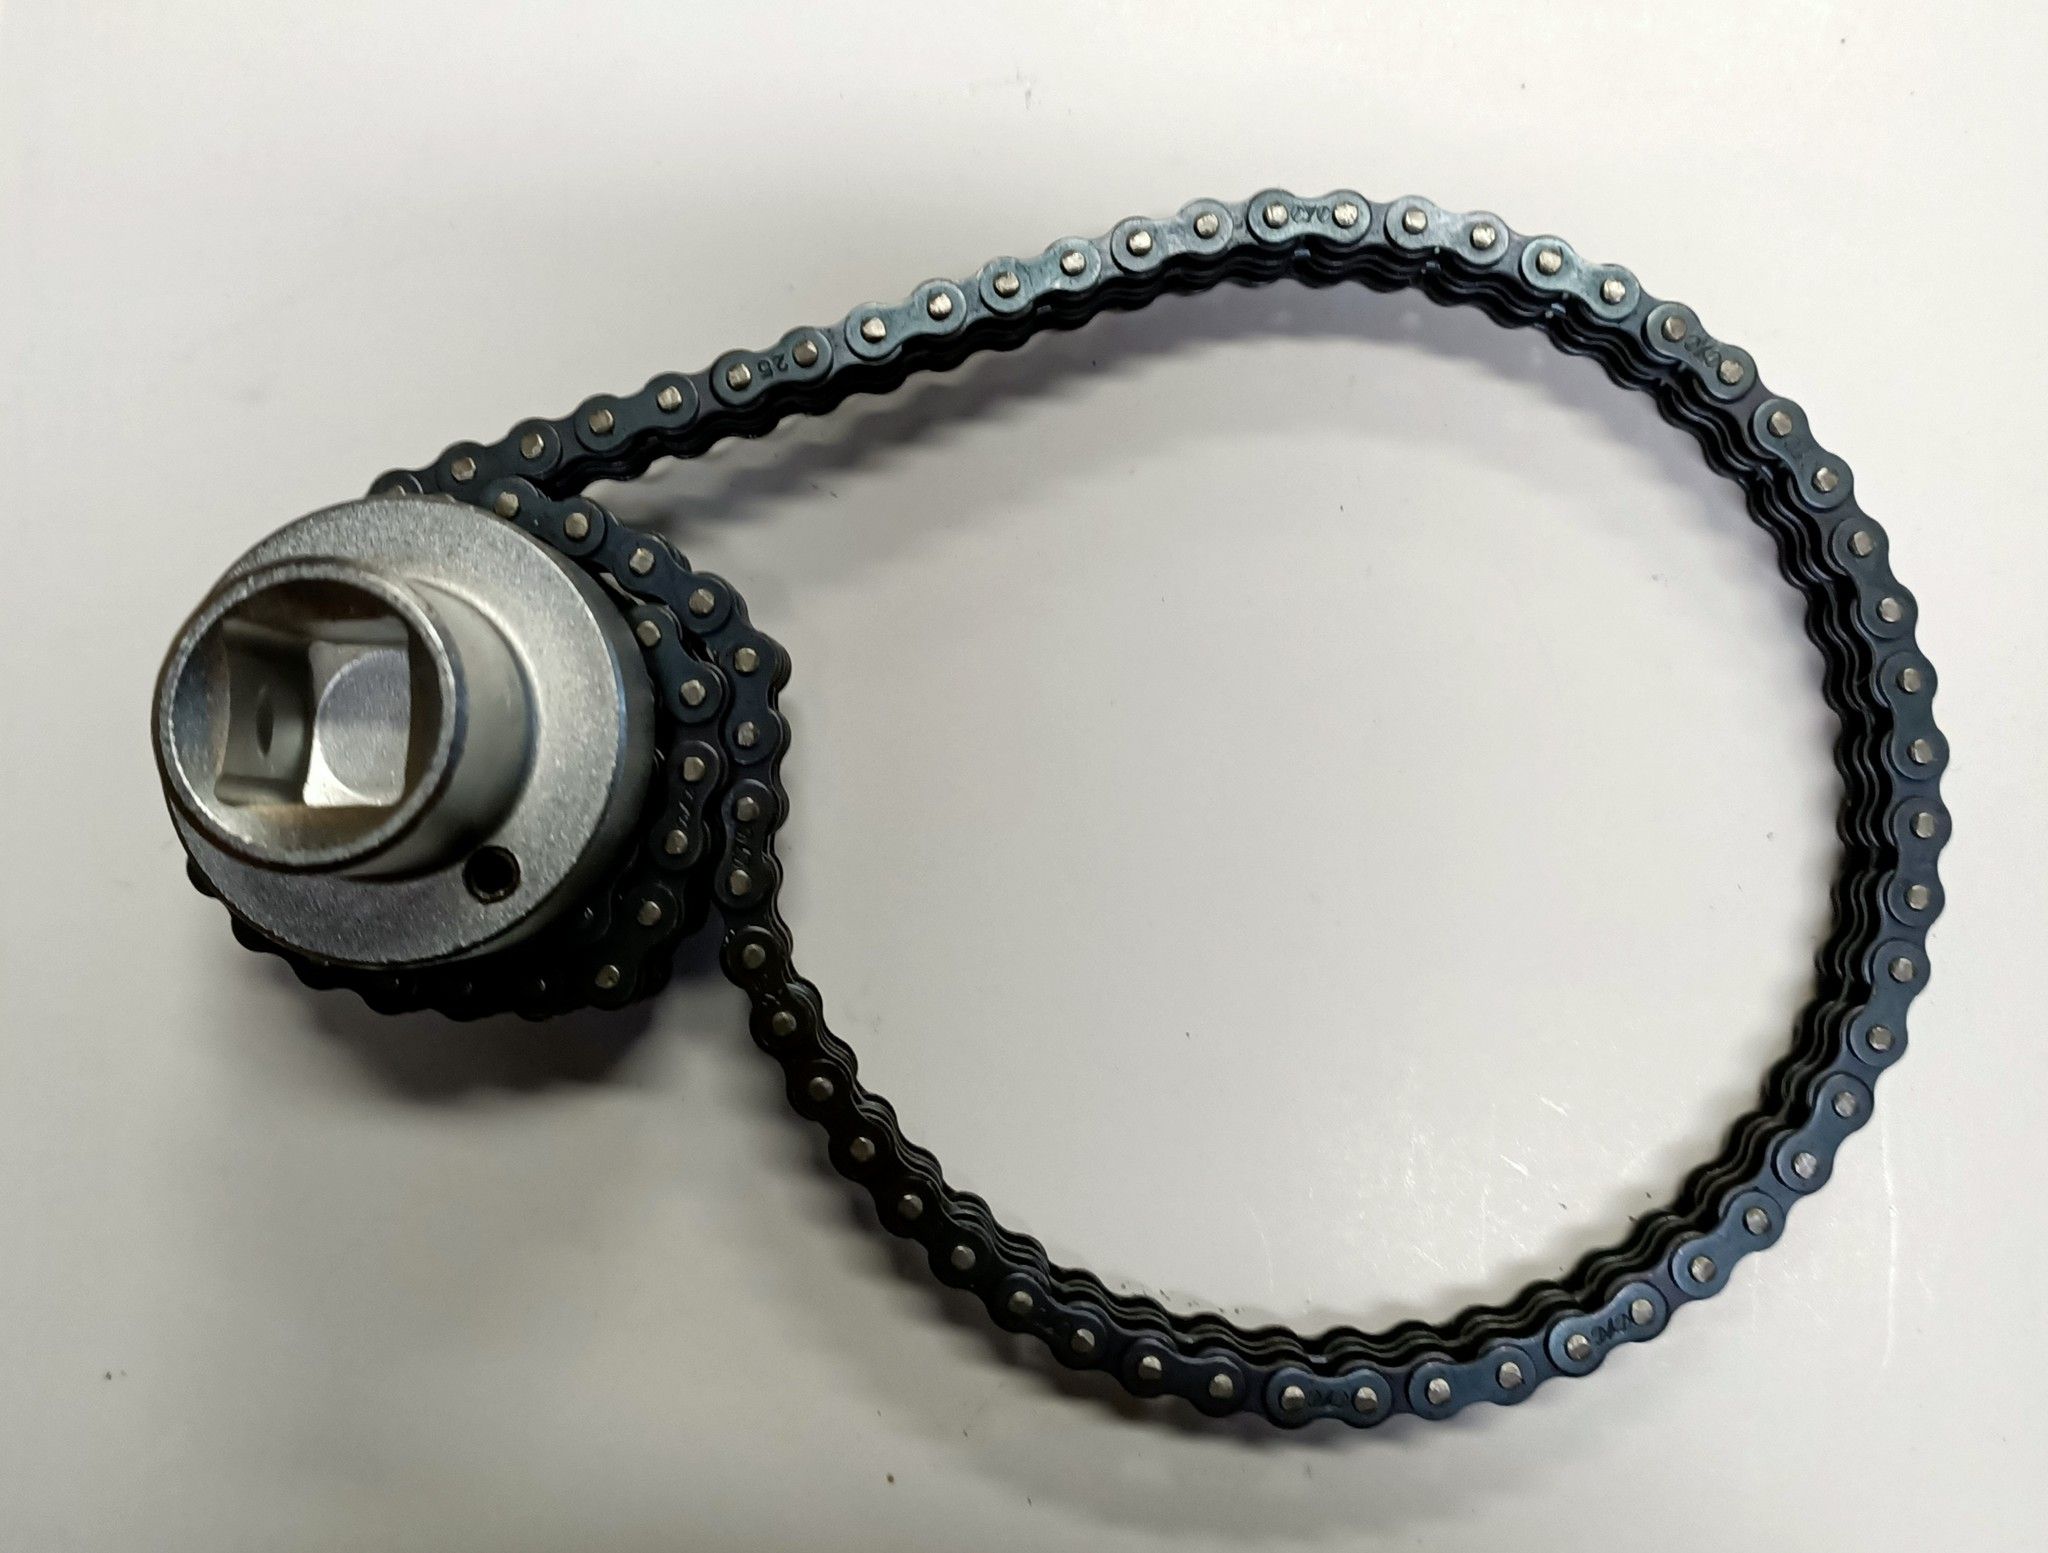 Chiave per filtri olio e gasolio a doppia catena mm 40-160